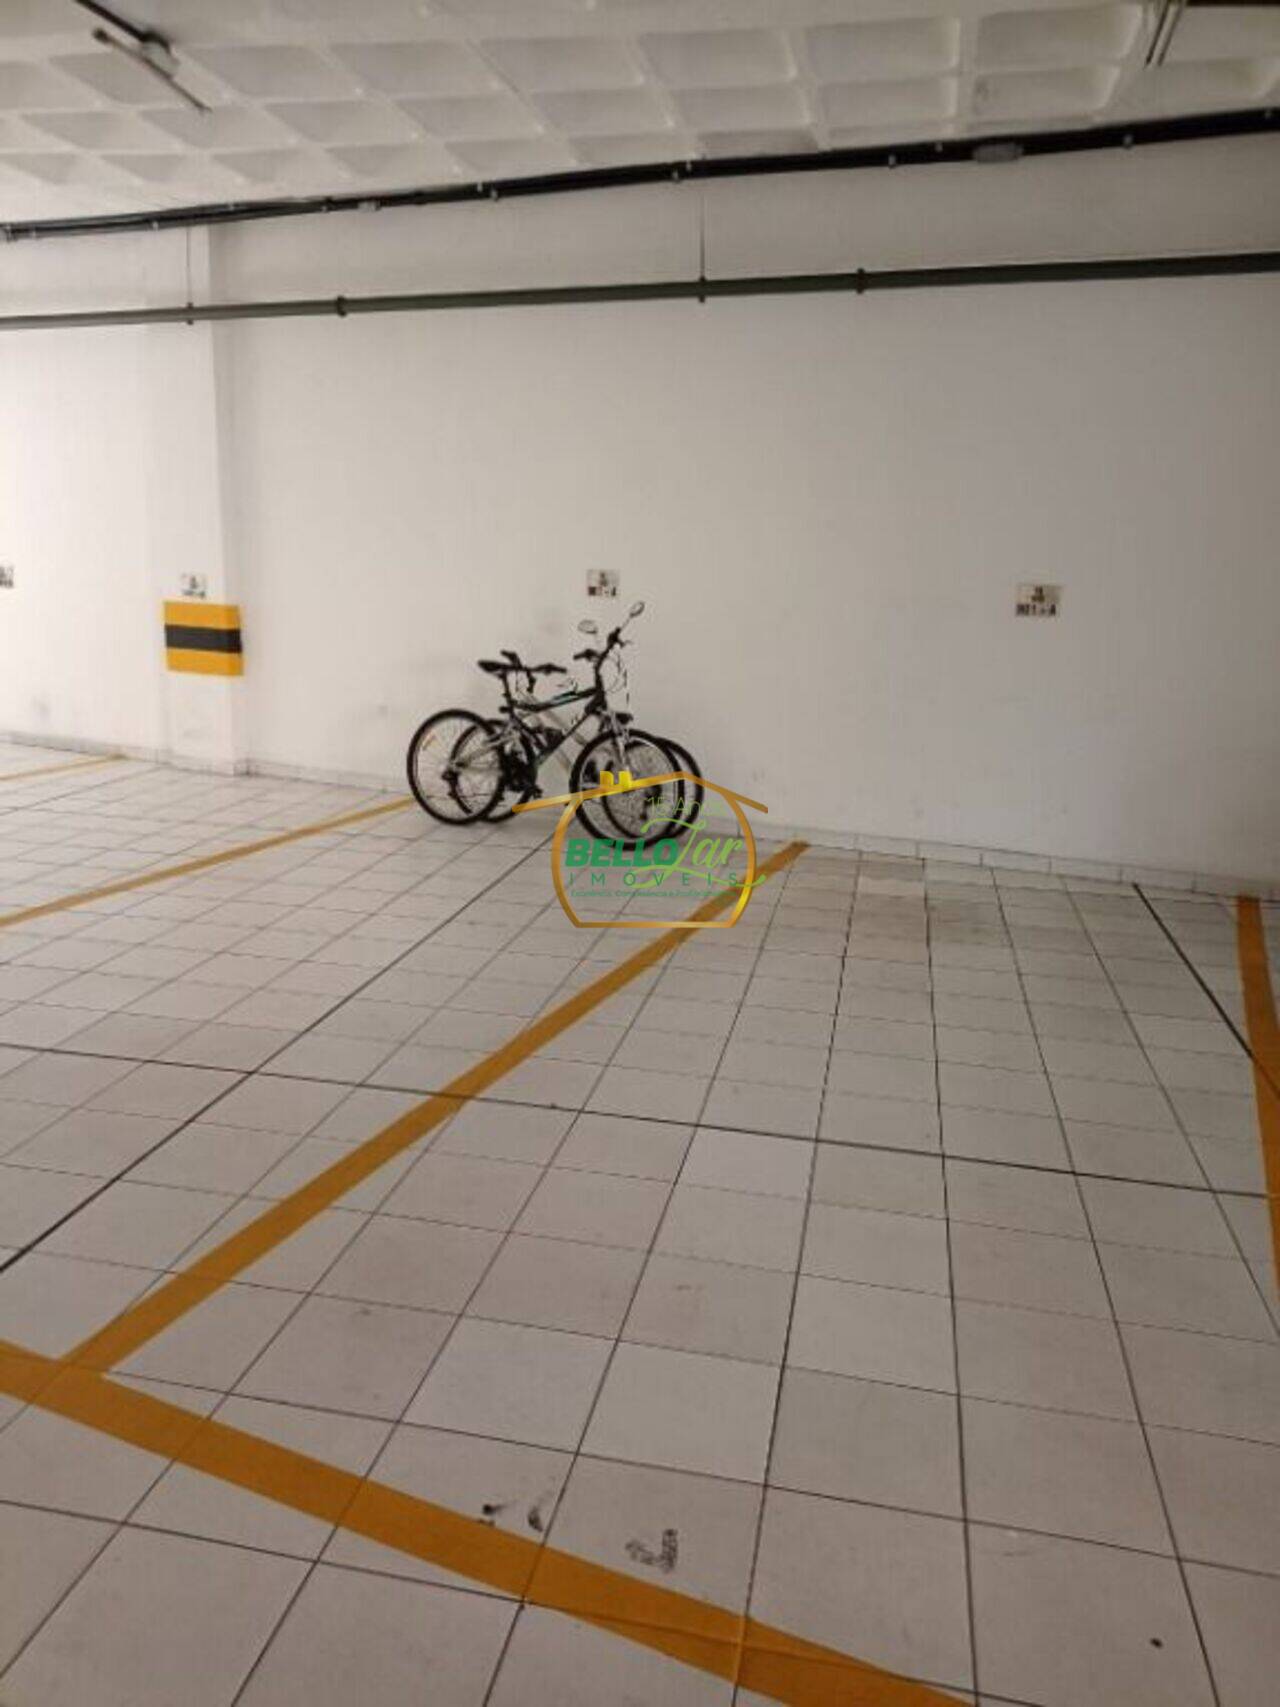 Apartamento Casa Amarela, Recife - PE